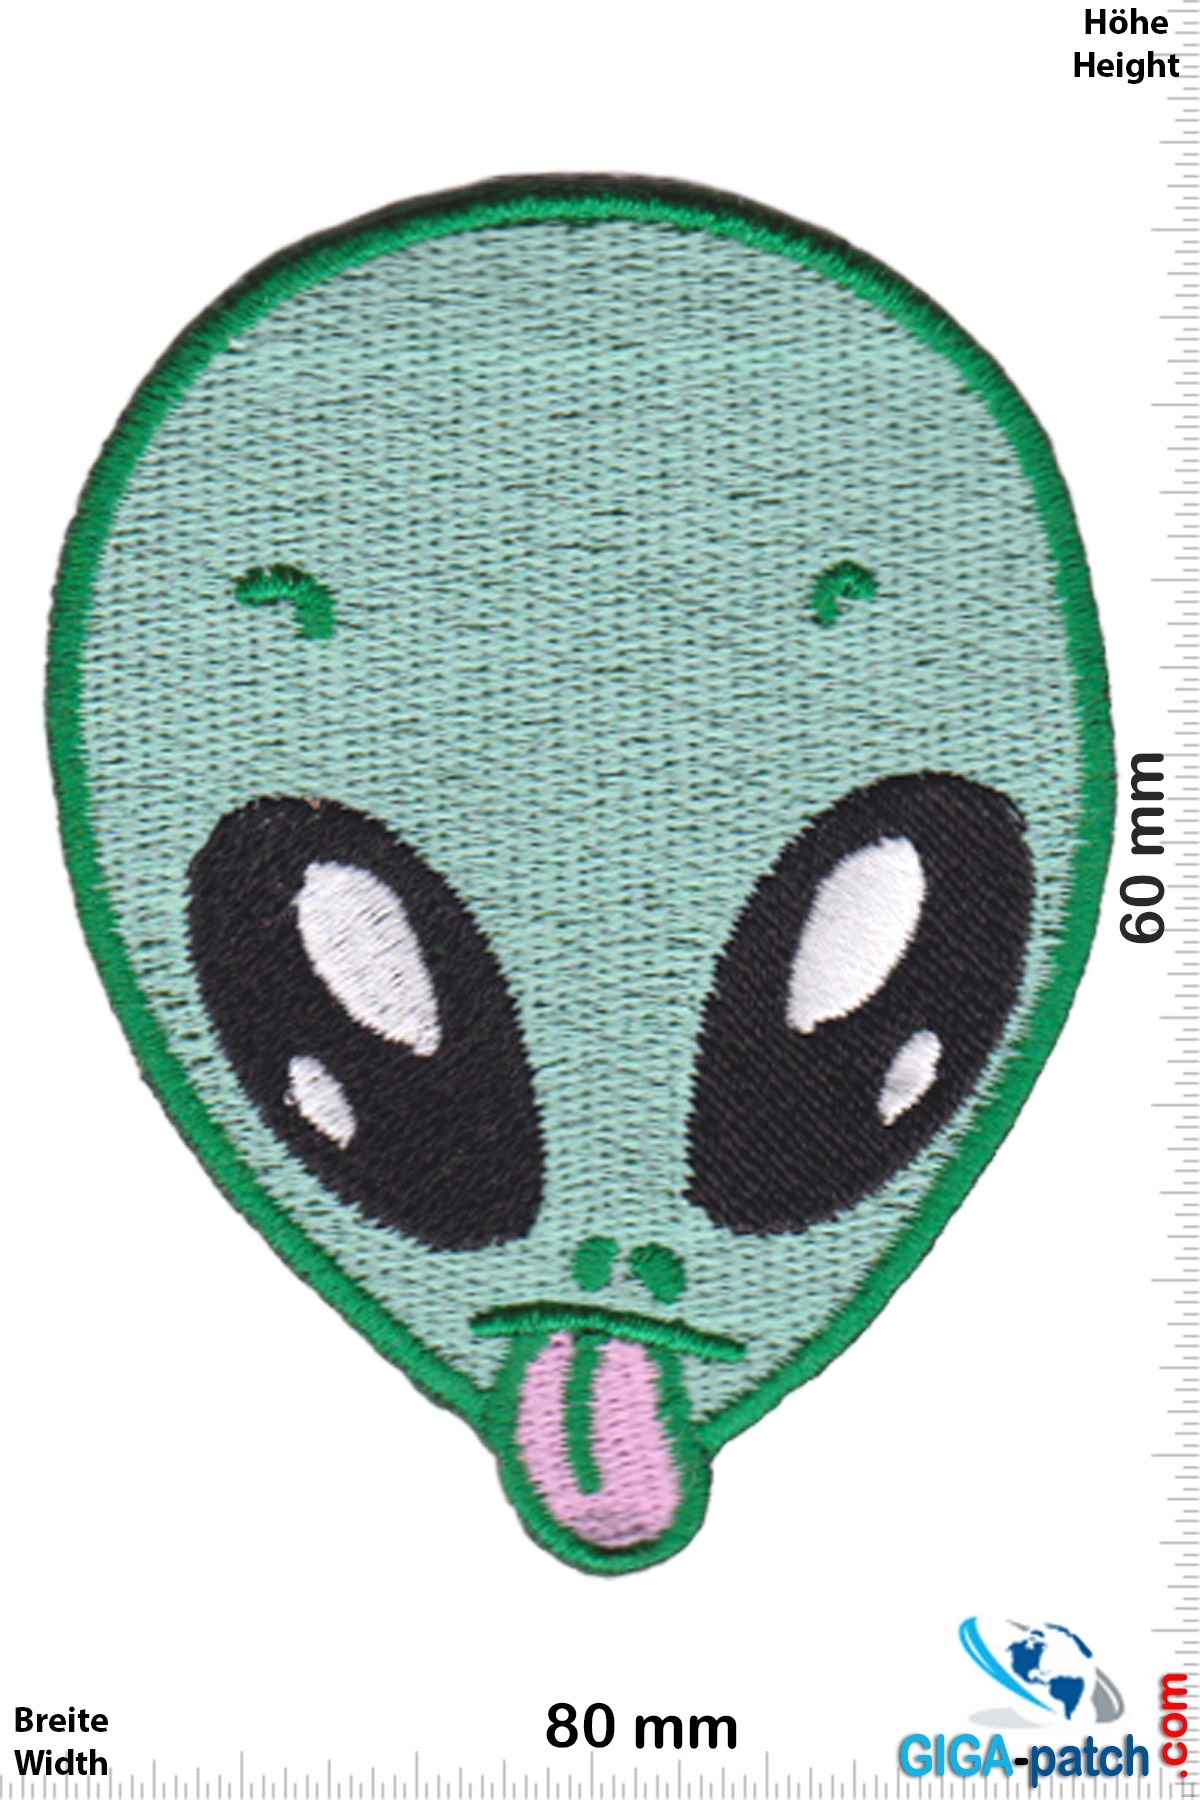 Alien Alien Head - tongue